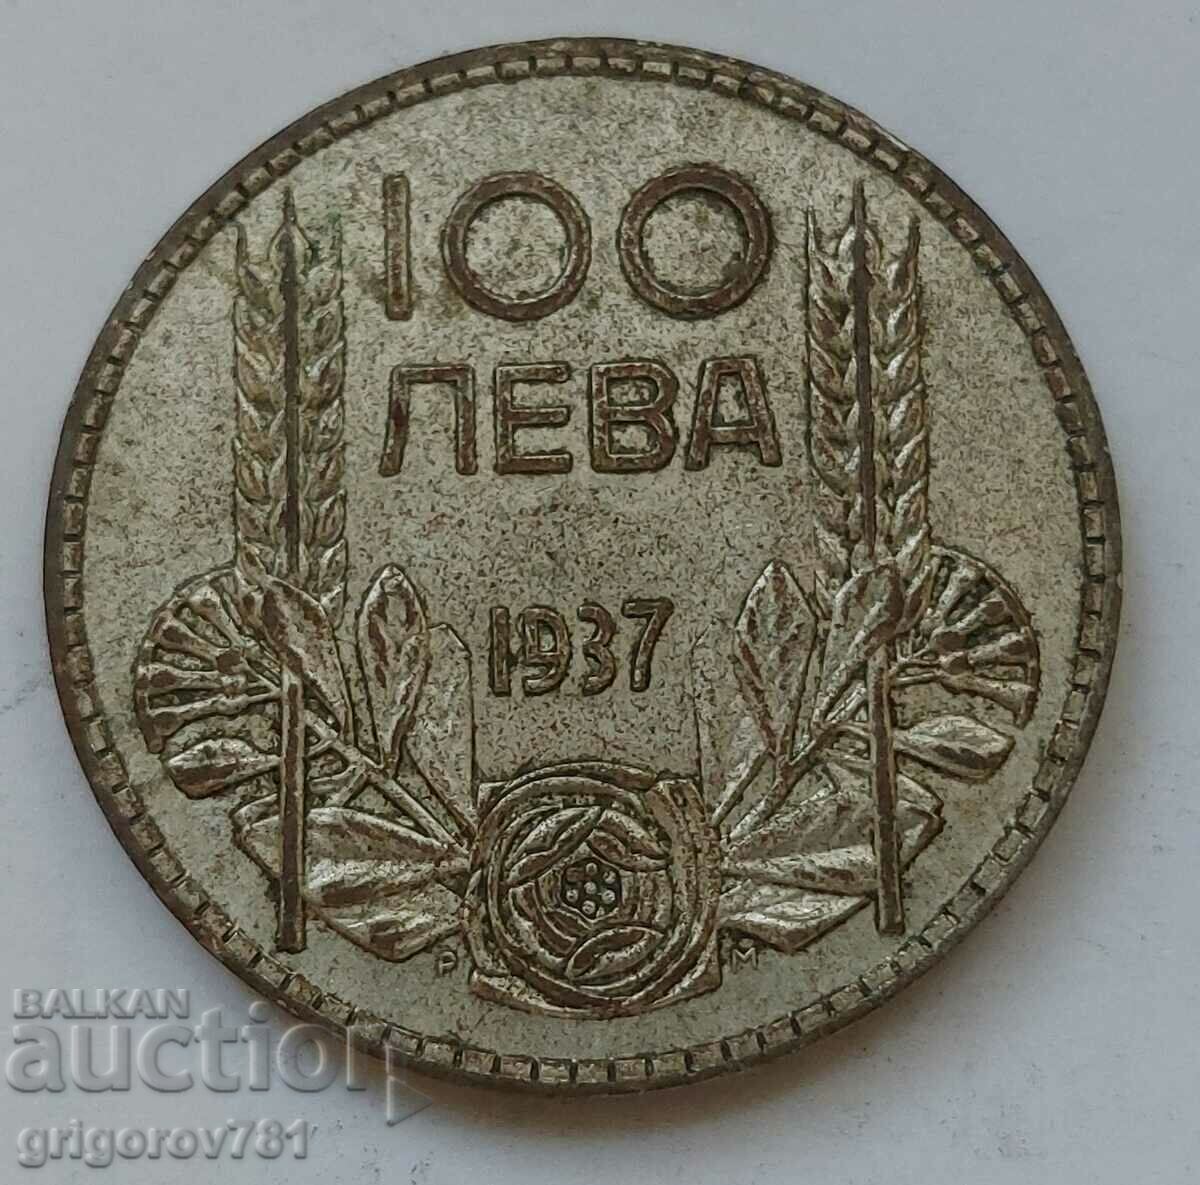 Ασήμι 100 λέβα Βουλγαρία 1937 - ασημένιο νόμισμα #108